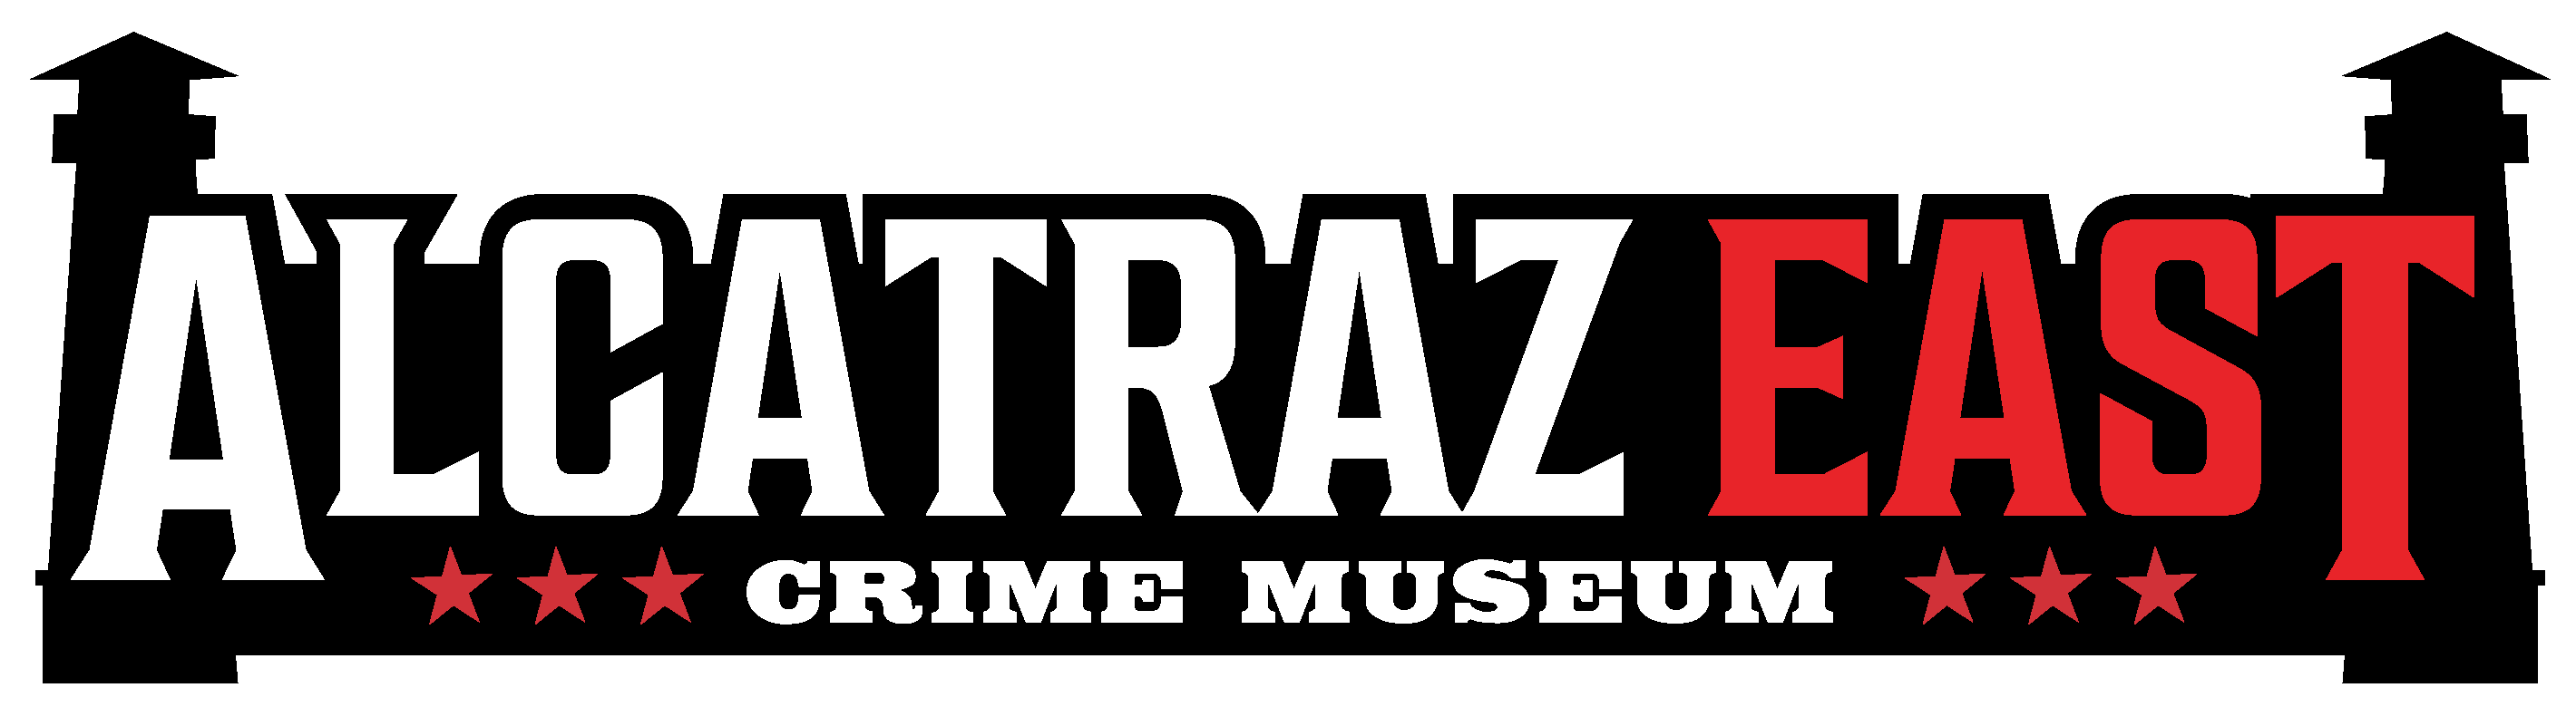 Logo for Alcatraz Crime Museum